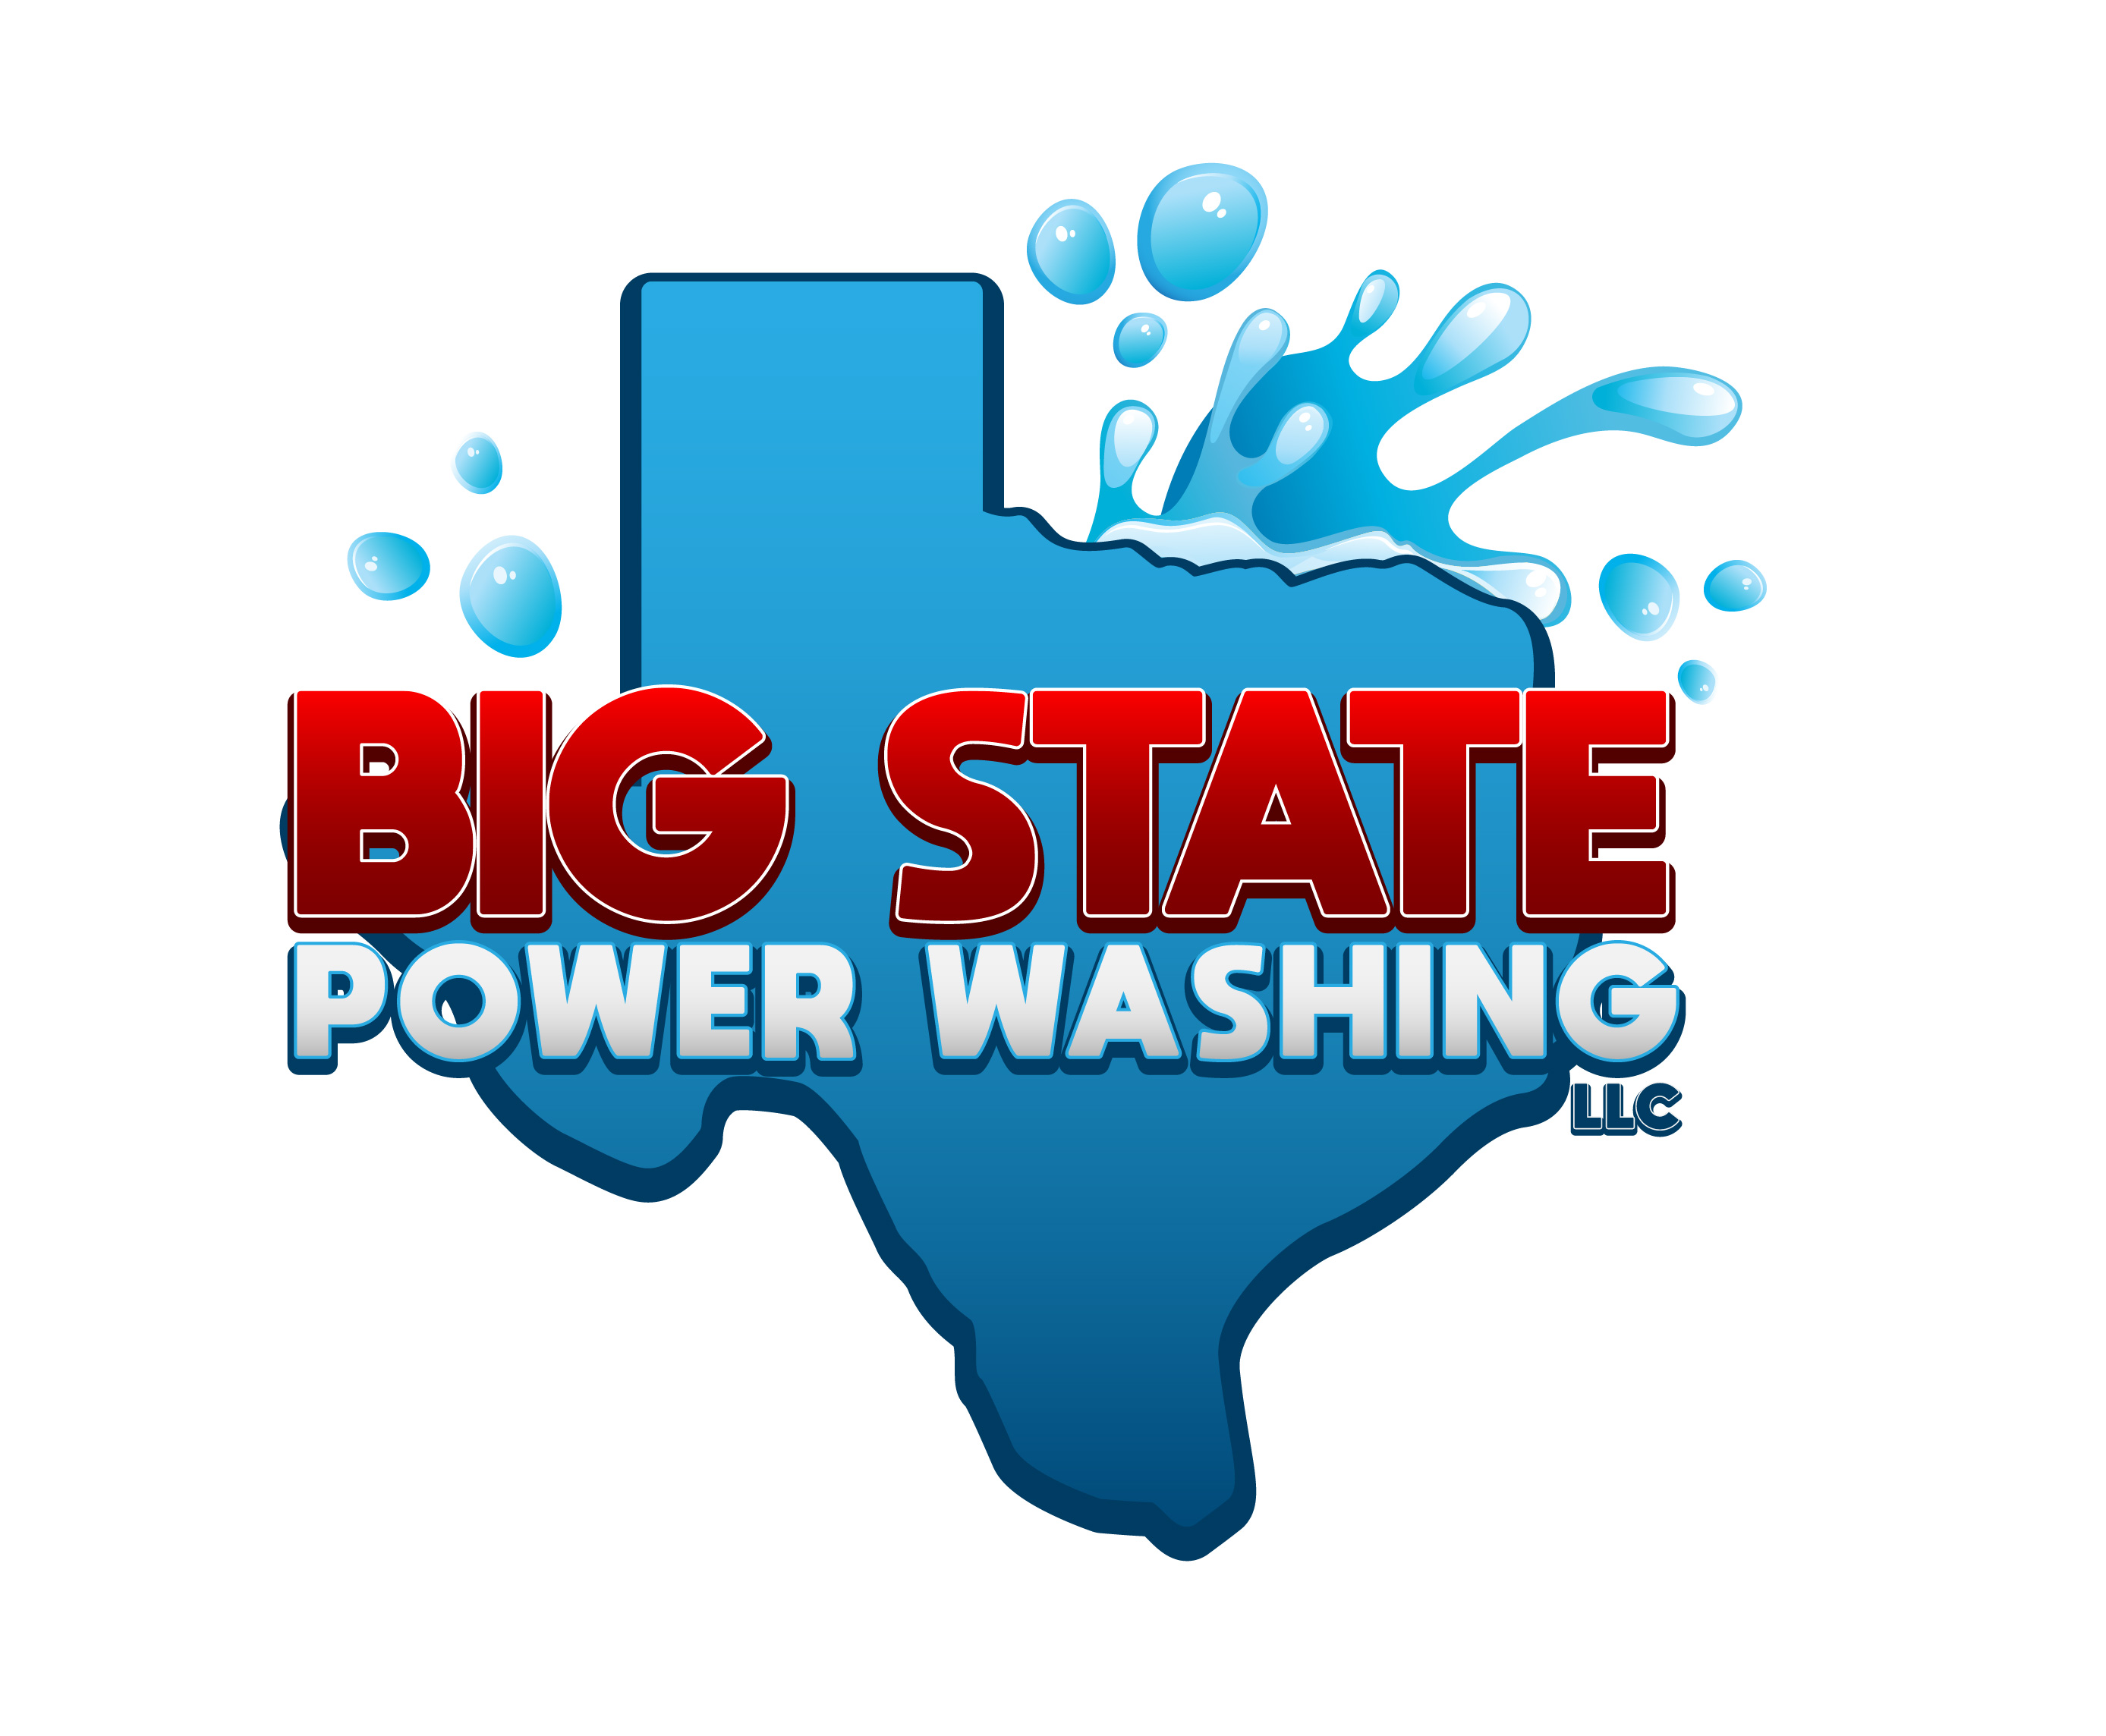 Big State Power Washing - Home  Facebook Logo